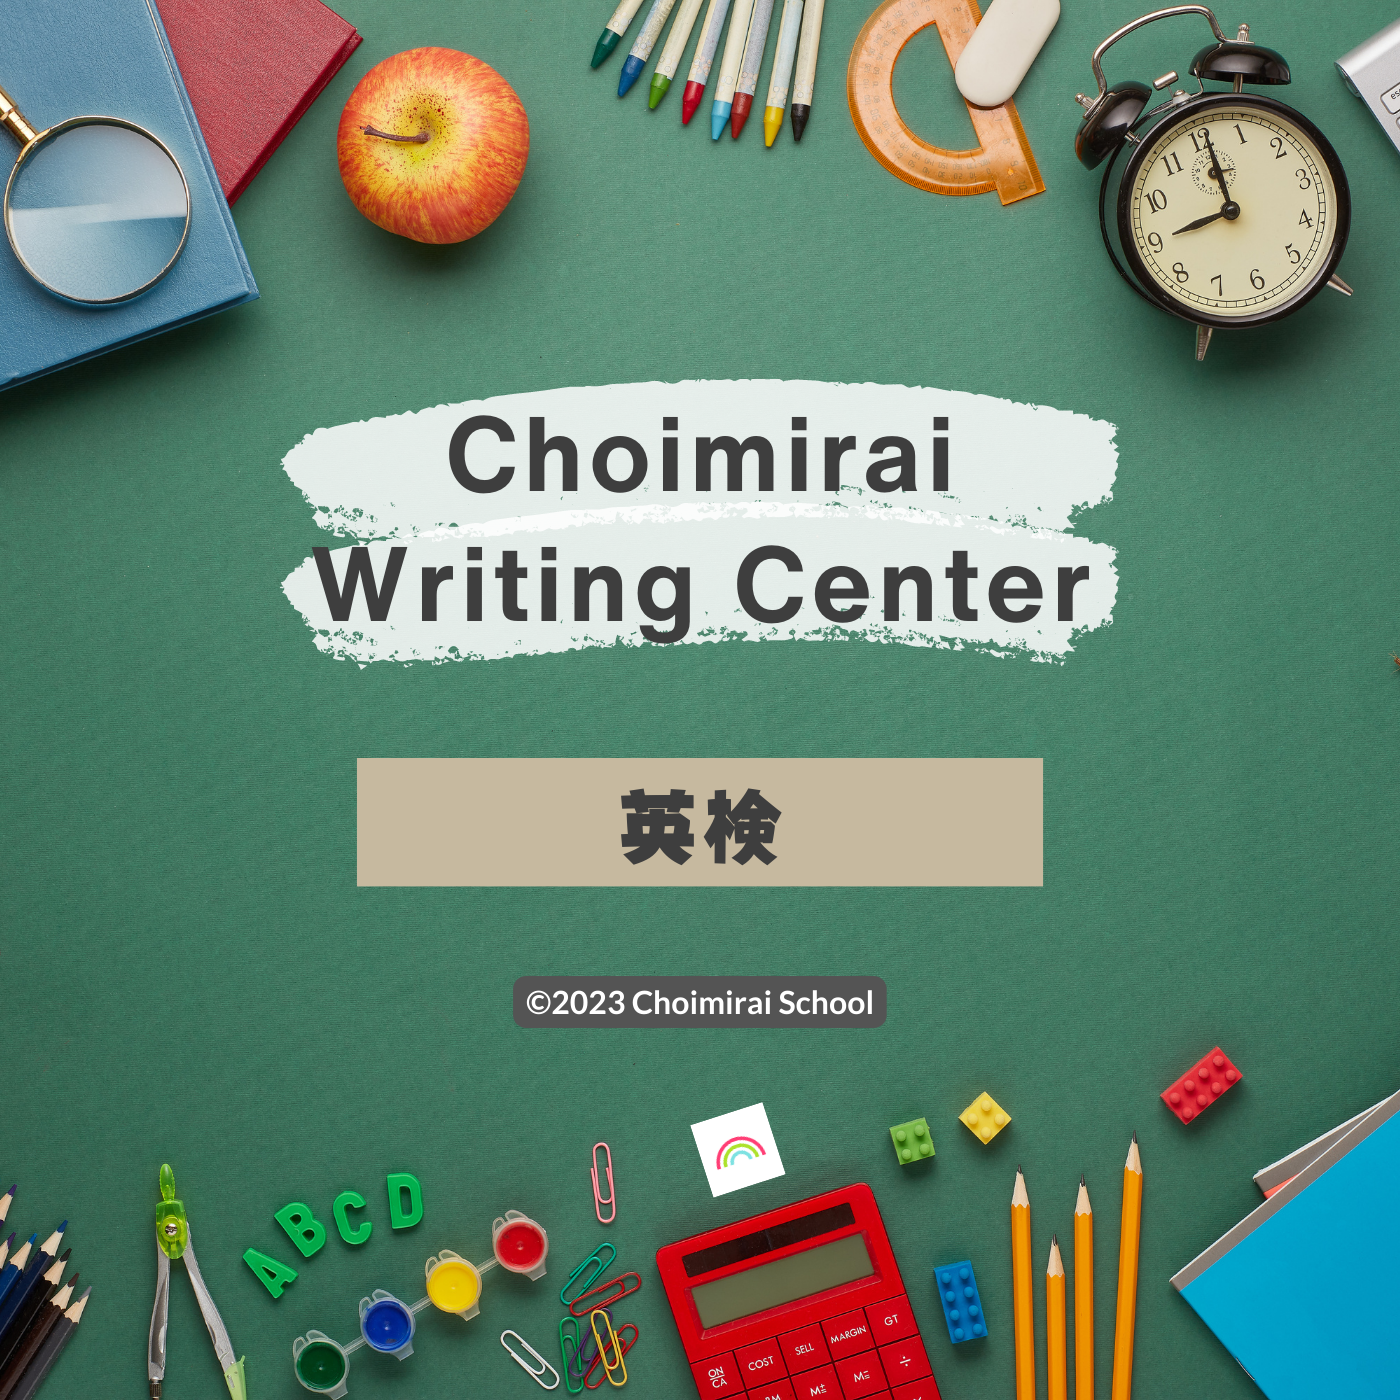 Choimirai Writing Center: 英検